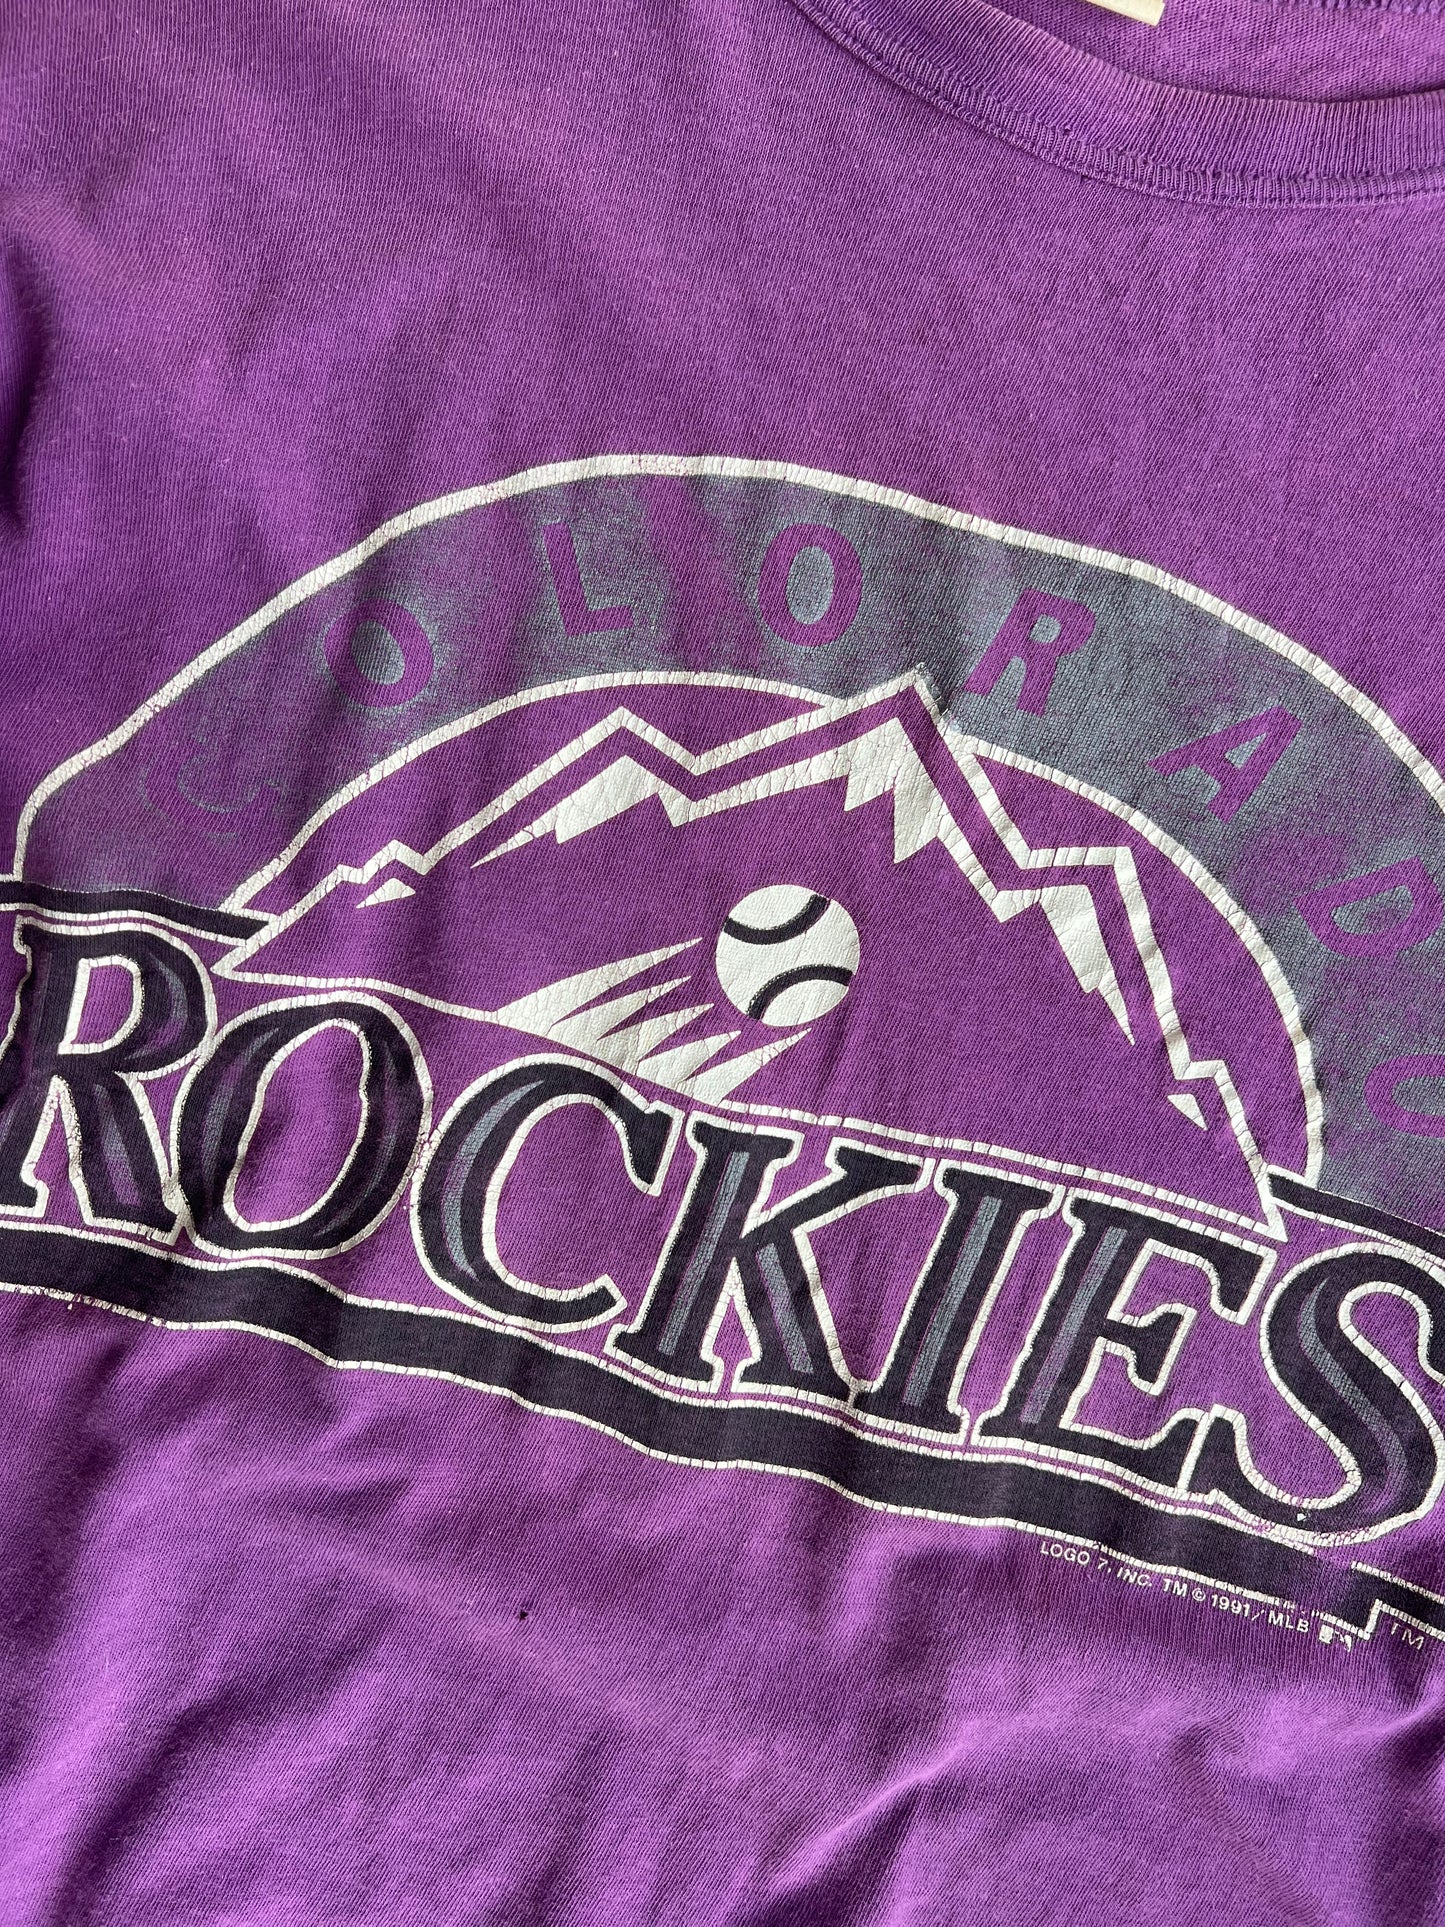 Vintage Colorado Rockies Shirt - M